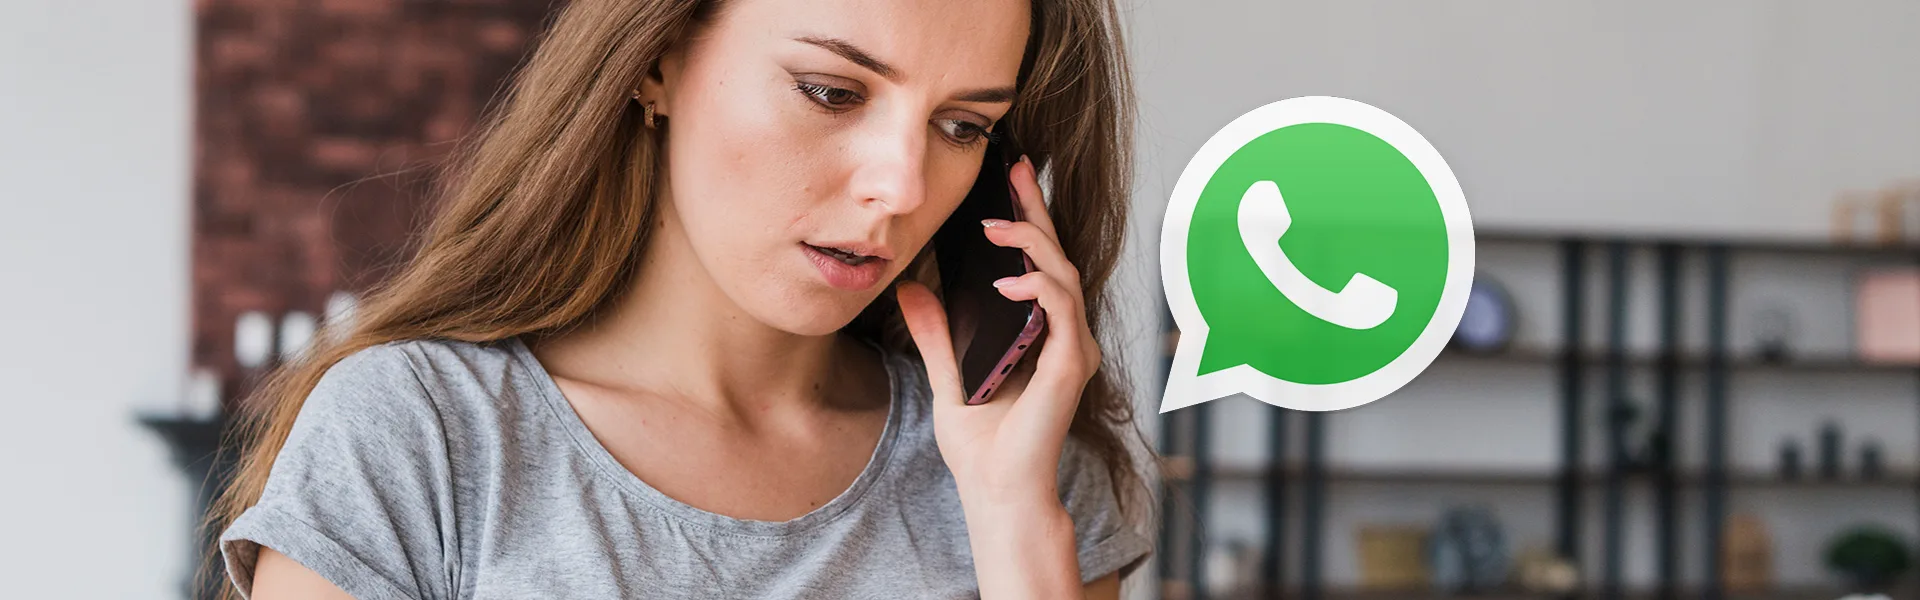 Vorwahl 44 auf WhatsApp - Was tun, wenn man kontaktiert wird?